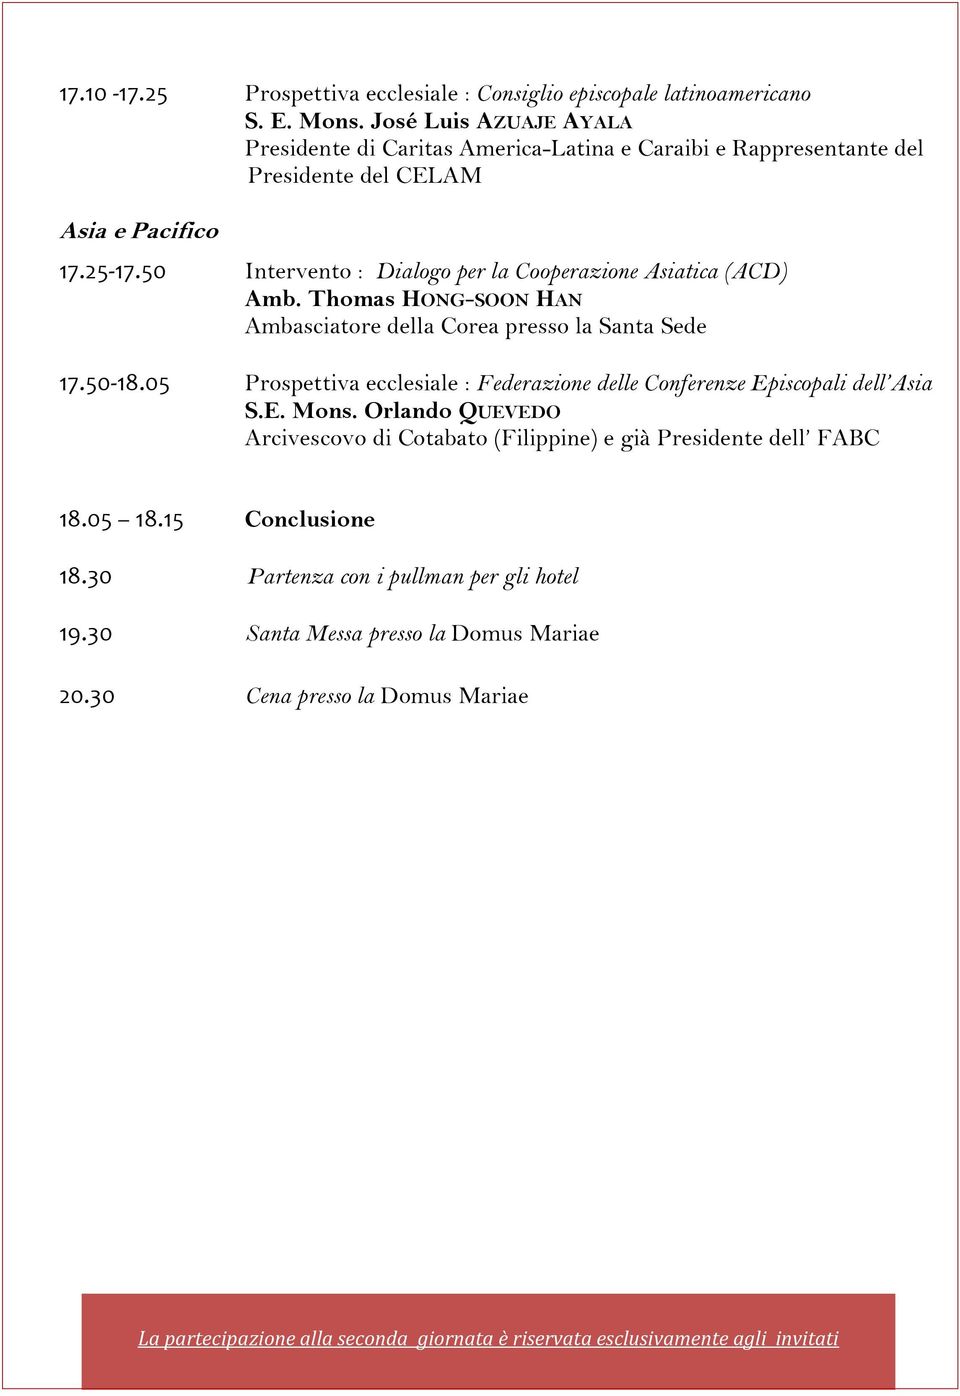 50 Intervento : Dialogo per la Cooperazione Asiatica (ACD) Amb. Thomas HONG-SOON HAN Ambasciatore della Corea presso la Santa Sede 17.50-18.